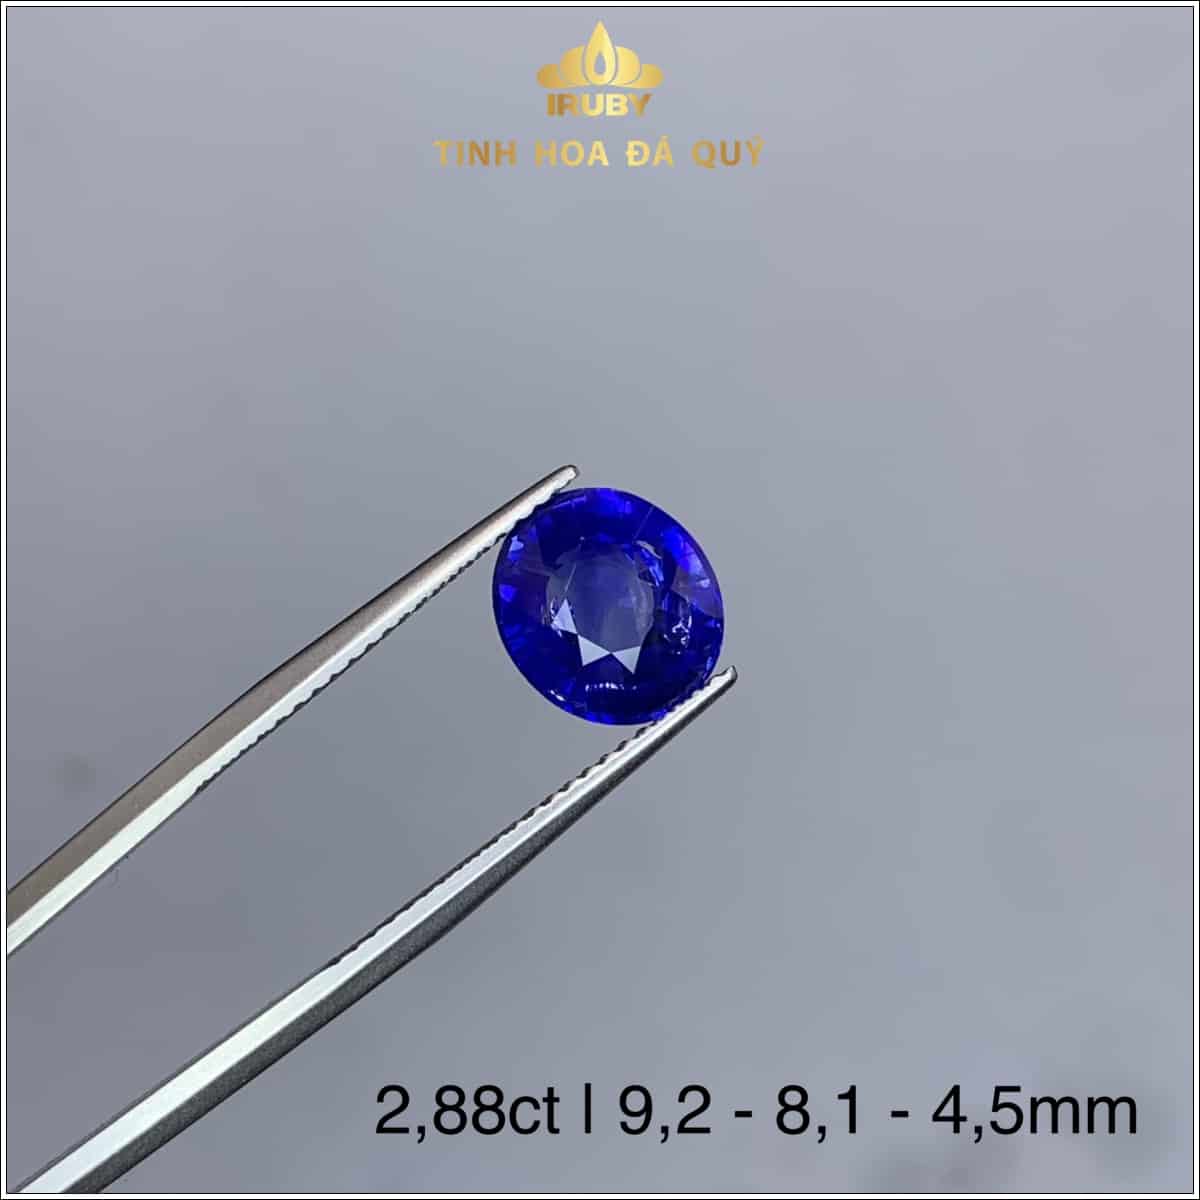 Viên Sapphire màu xanh lam hoàng gia 2,88ct - IRSP 235288 hình ảnh